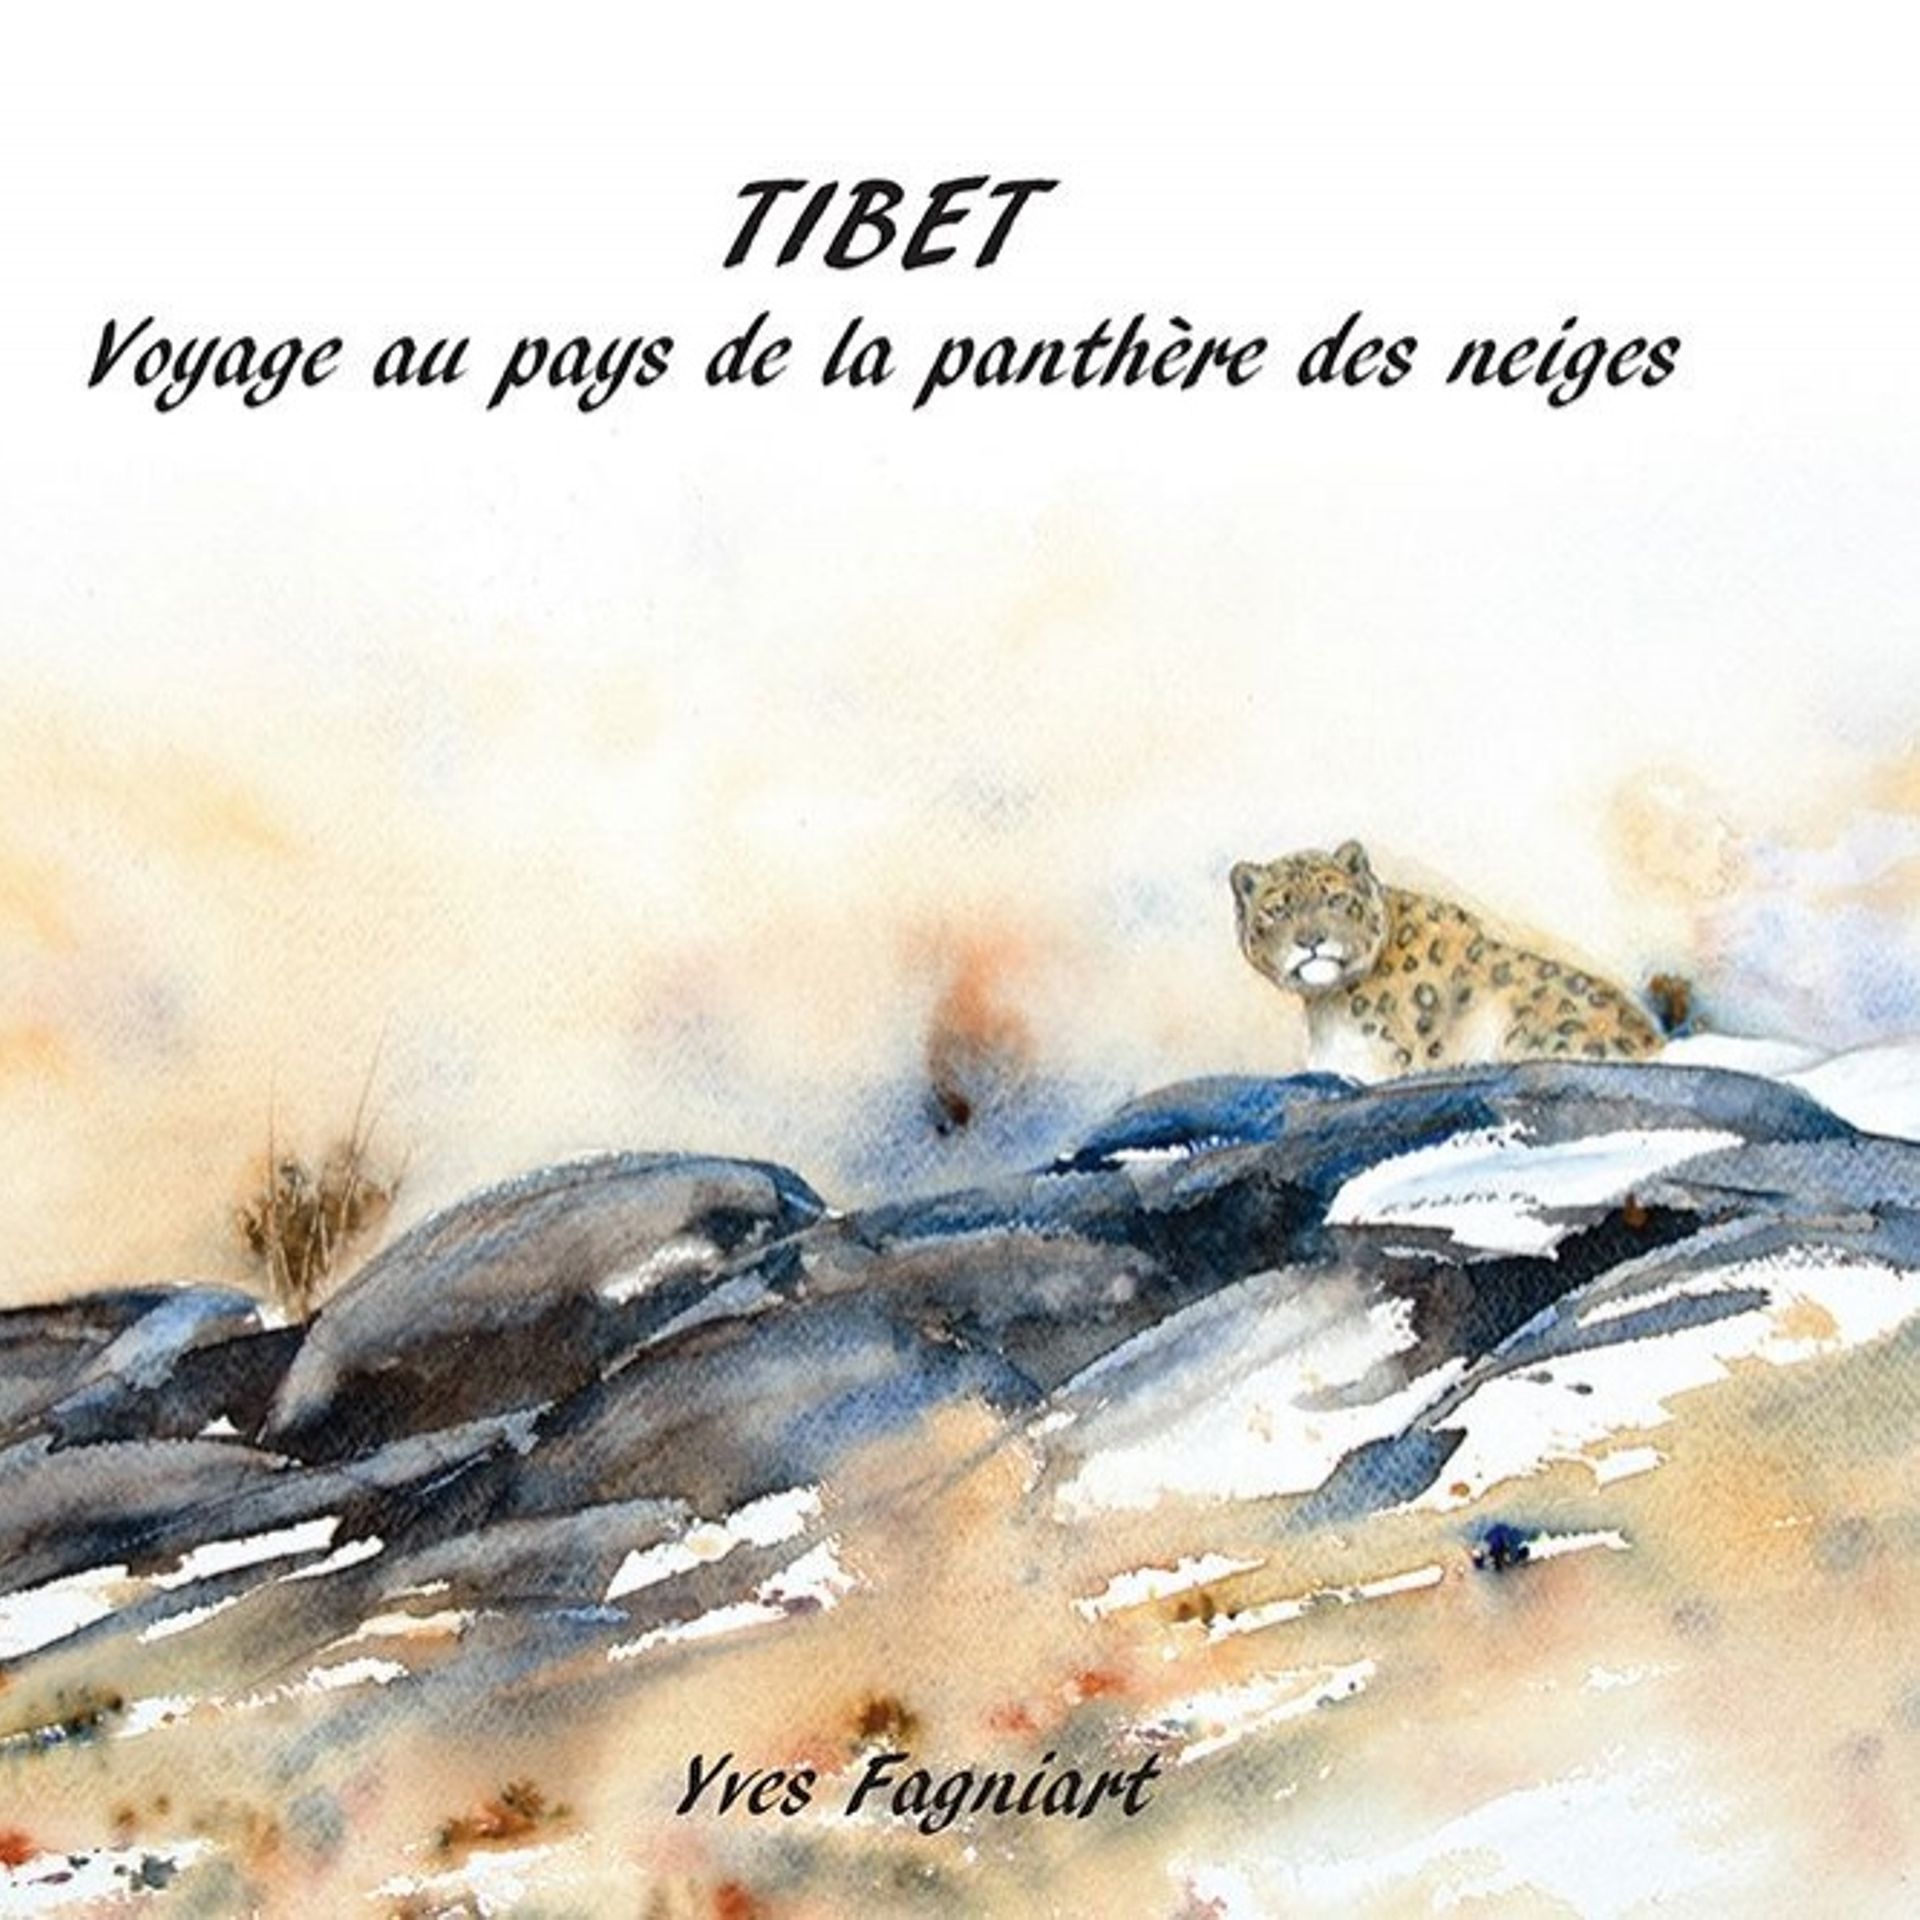 Sortie du carnet de voyage « Tibet, voyage au pays de la panthère des neiges » d’Yves Fagniart.